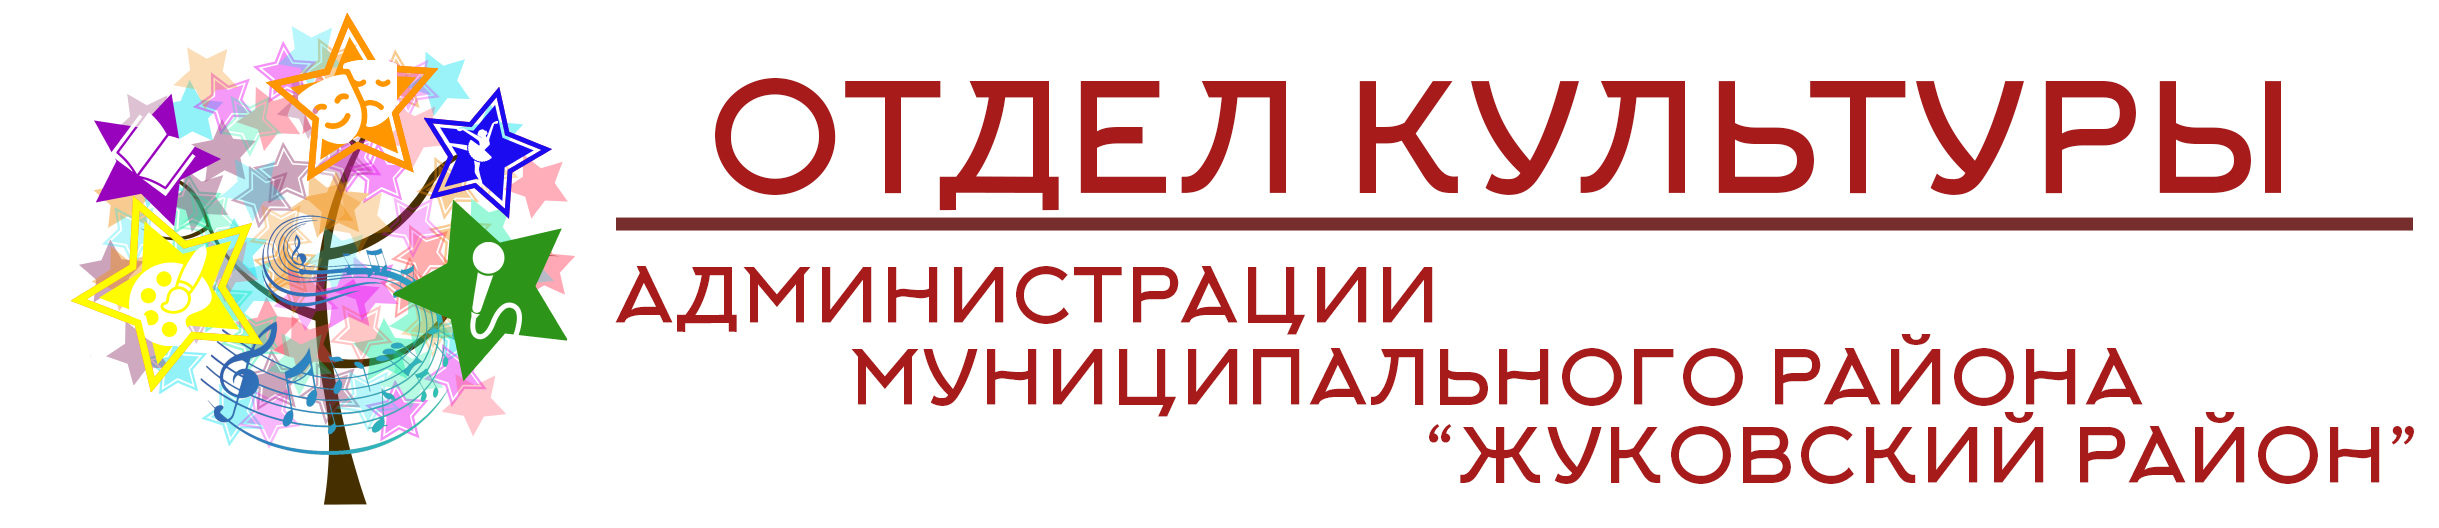 Официальный сайт отдела культуры администрации МР «Жуковский район»